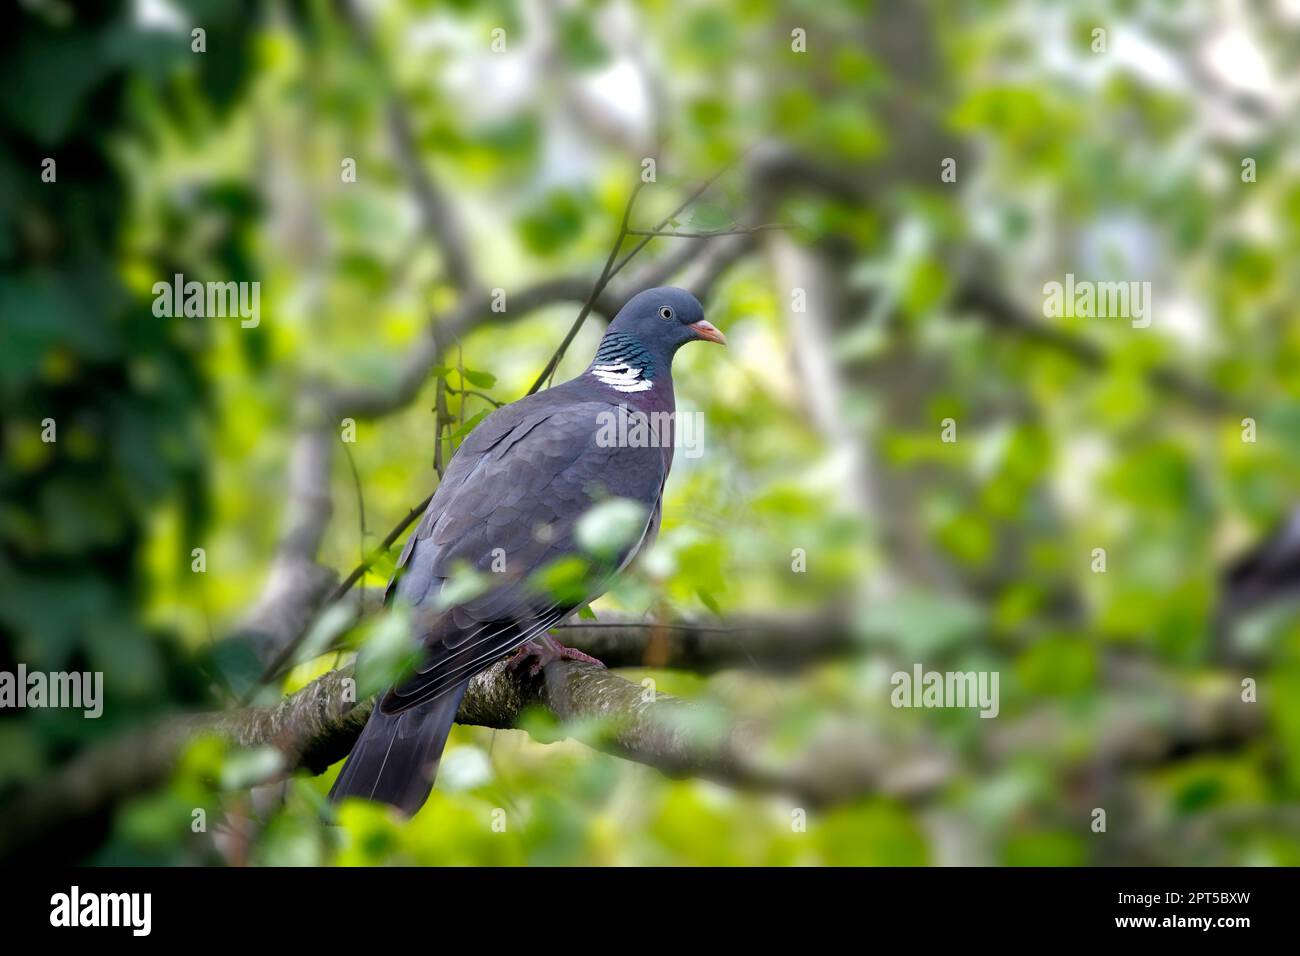 Un piccione di legno siede sul ramo di un albero di betulla, protetto dal verde delle foglie. Foto Stock